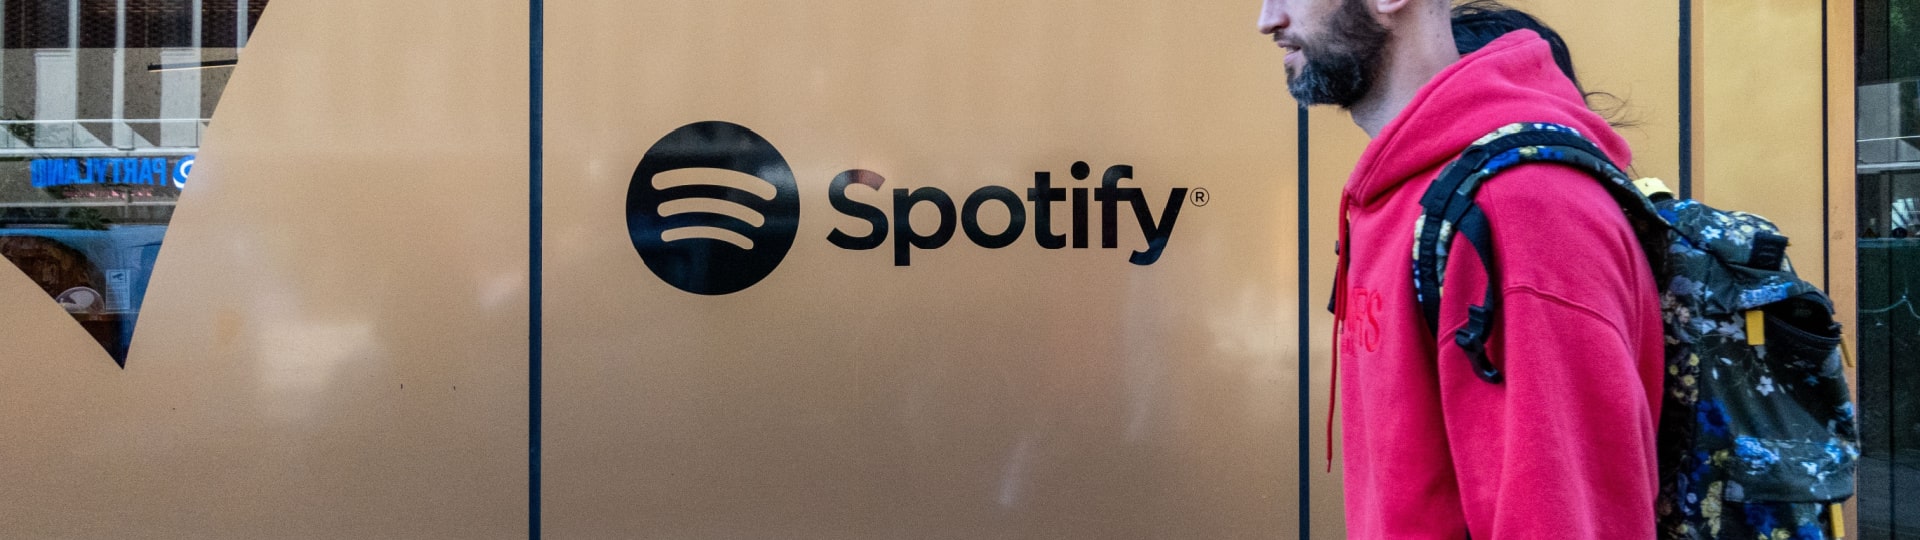 Spotify sníží počet zaměstnanců o 17 procent